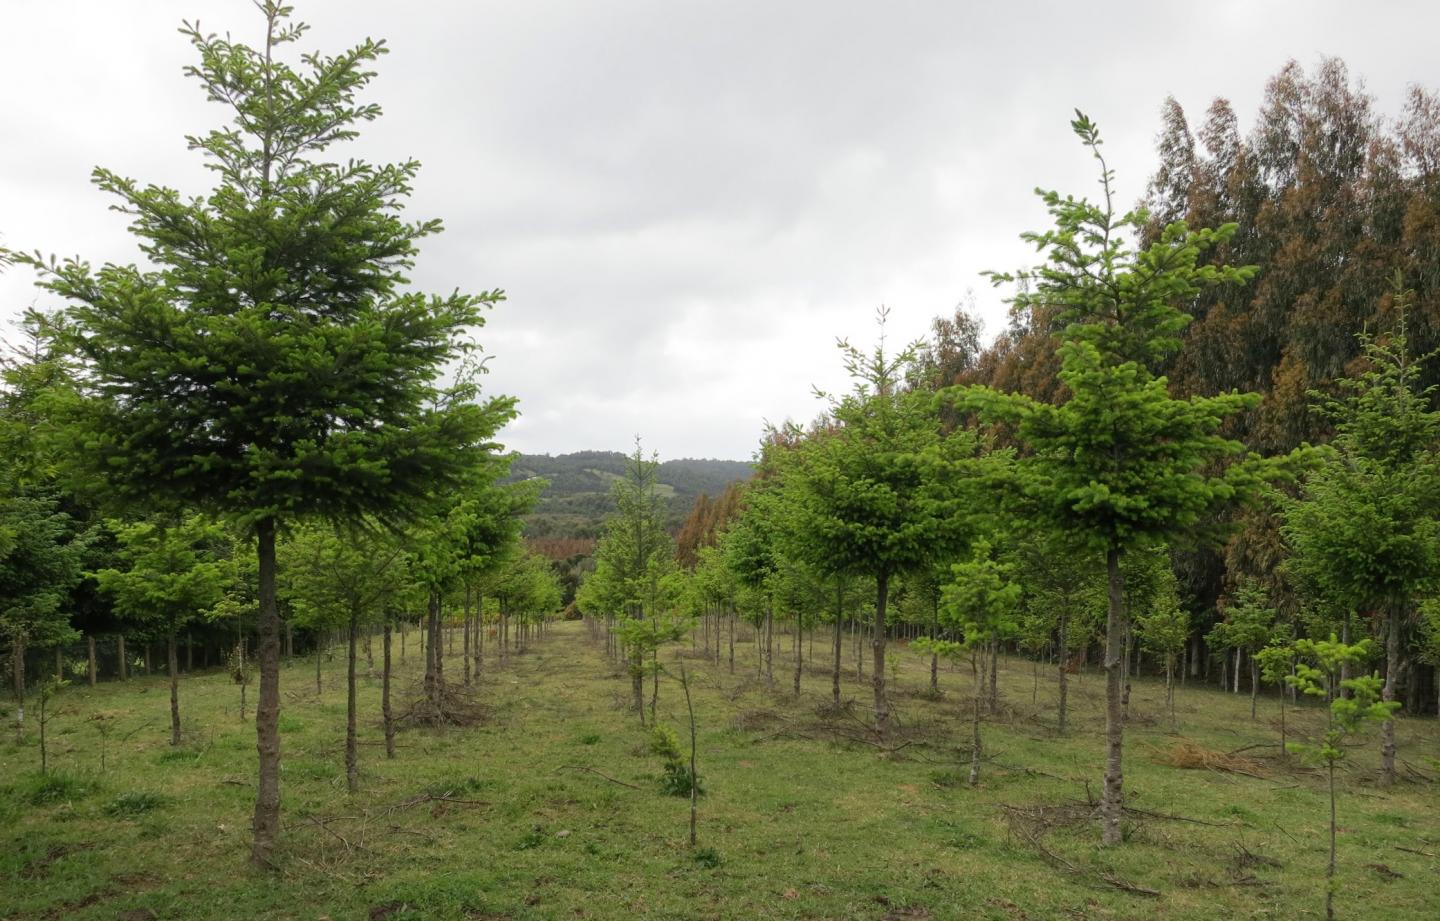 Plantación de árboles junto a un bosque / Foto: Dicyt